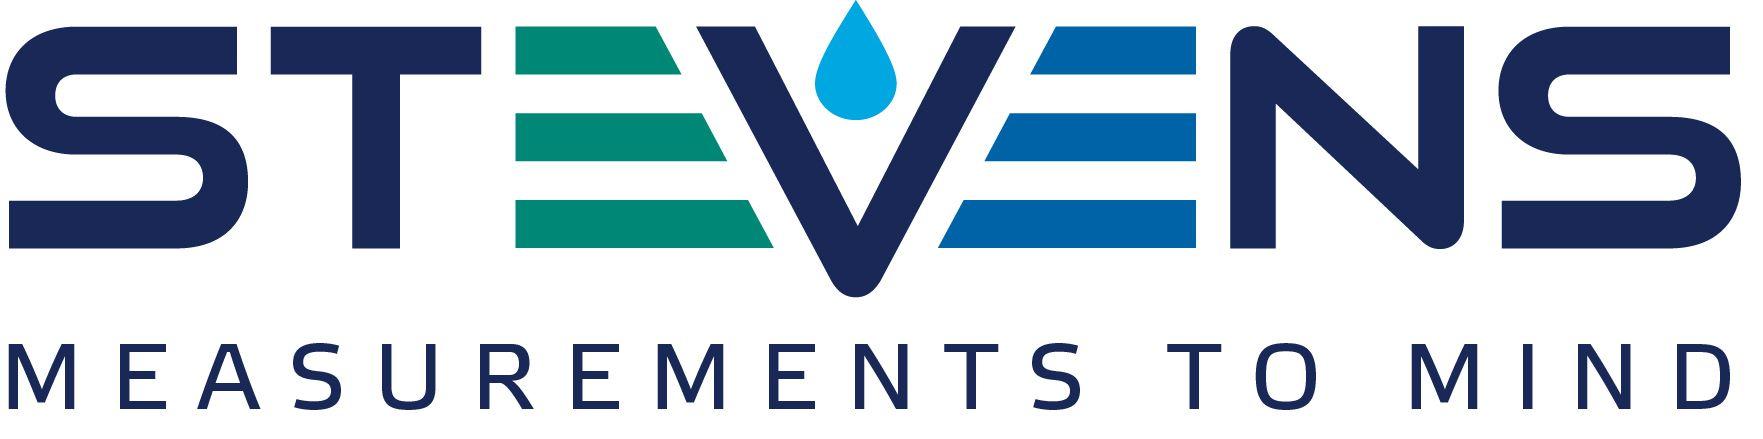 Stevens Logo - Stevens Water Support